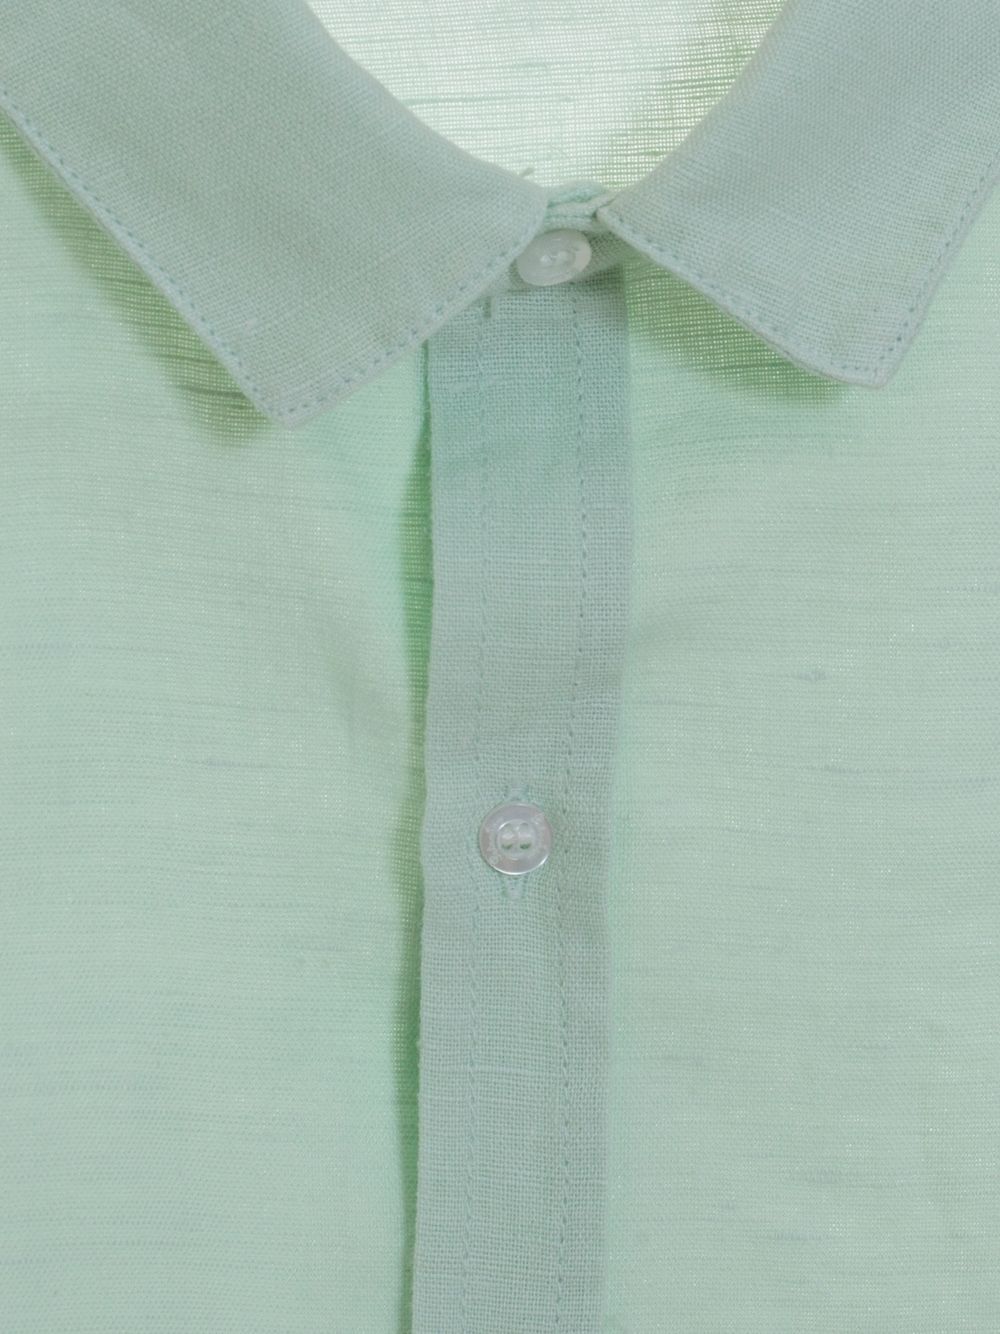 Green Water linen shirt